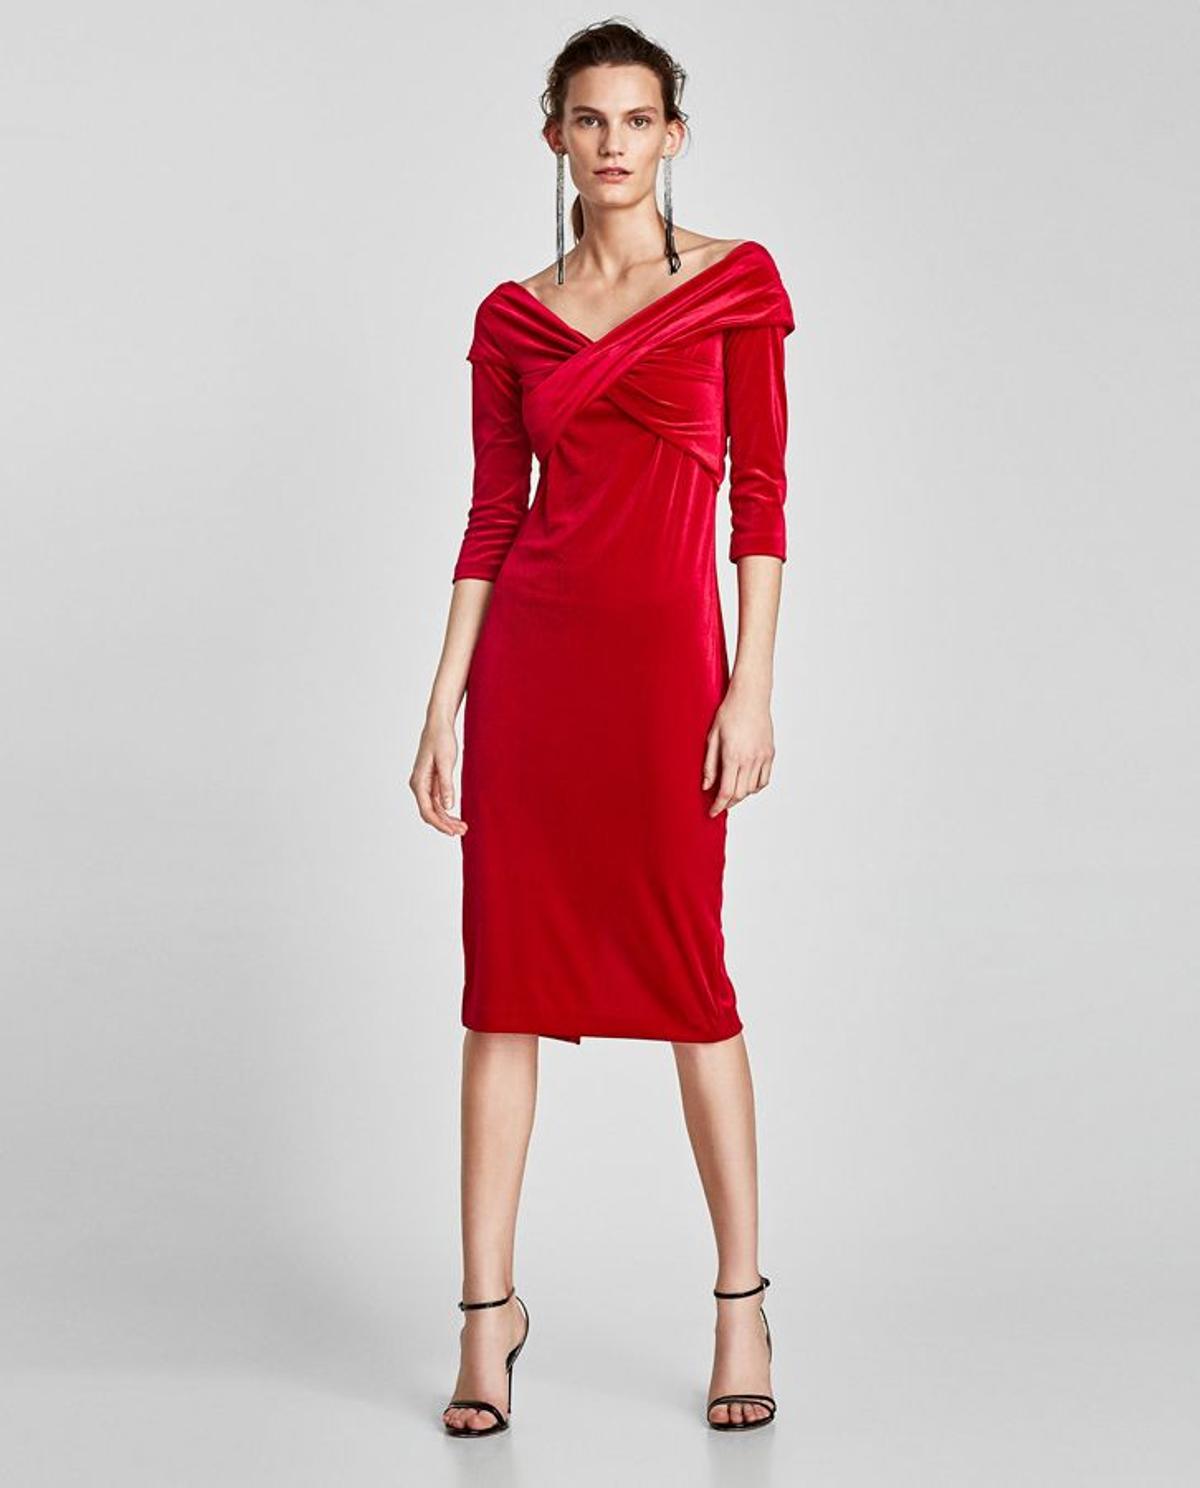 Vestido rojo de terciopelo que ha llevado la modelo Vanesa Lorenzo